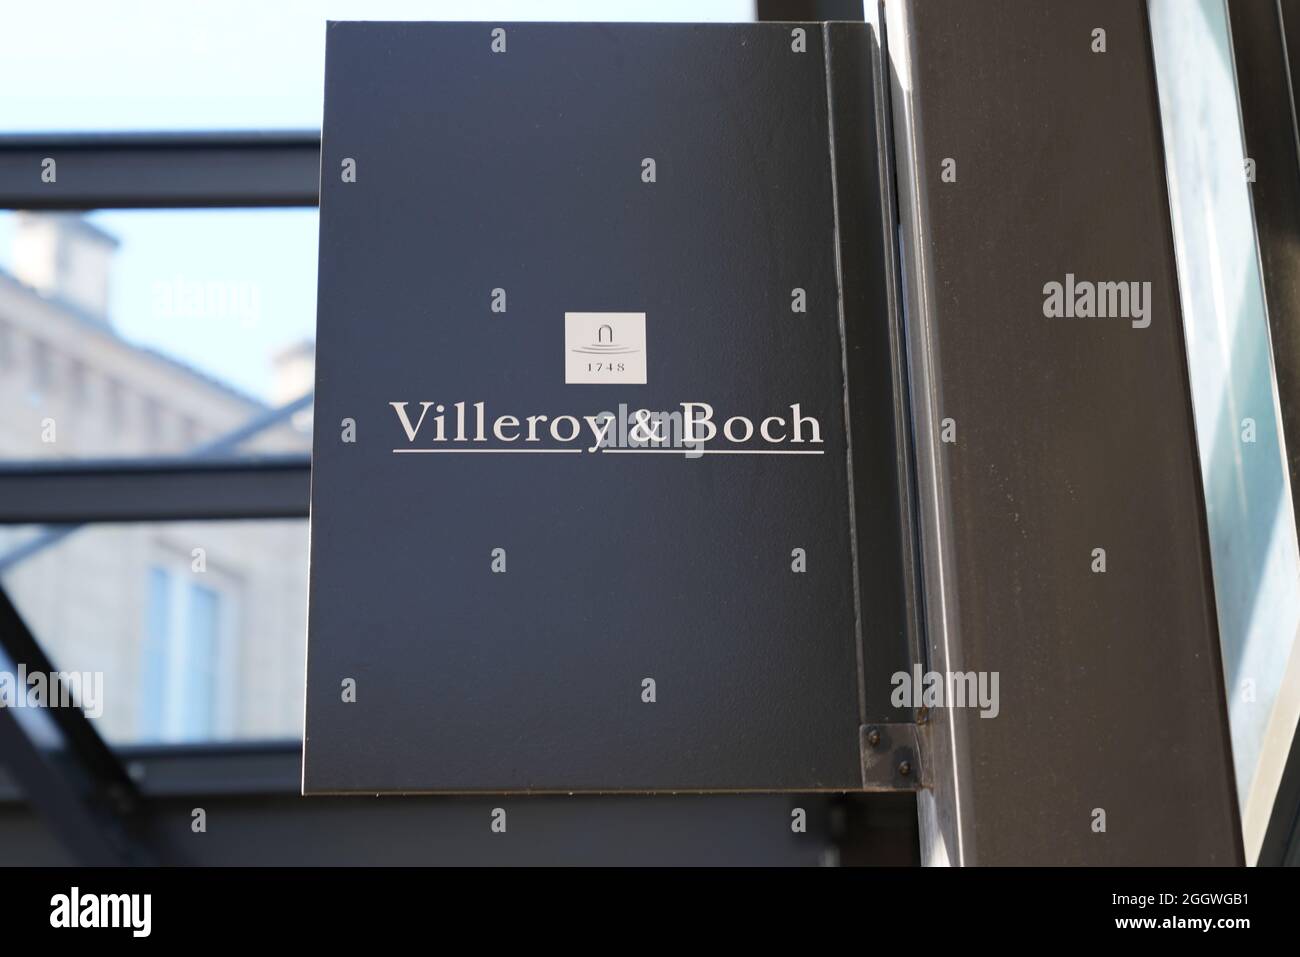 Bordeaux , Aquitaine France - 12 25 2020 : logo villeroy & boch marque et signature textuelle sur fabricant de la céramique d'ustensiles de cuisine Banque D'Images